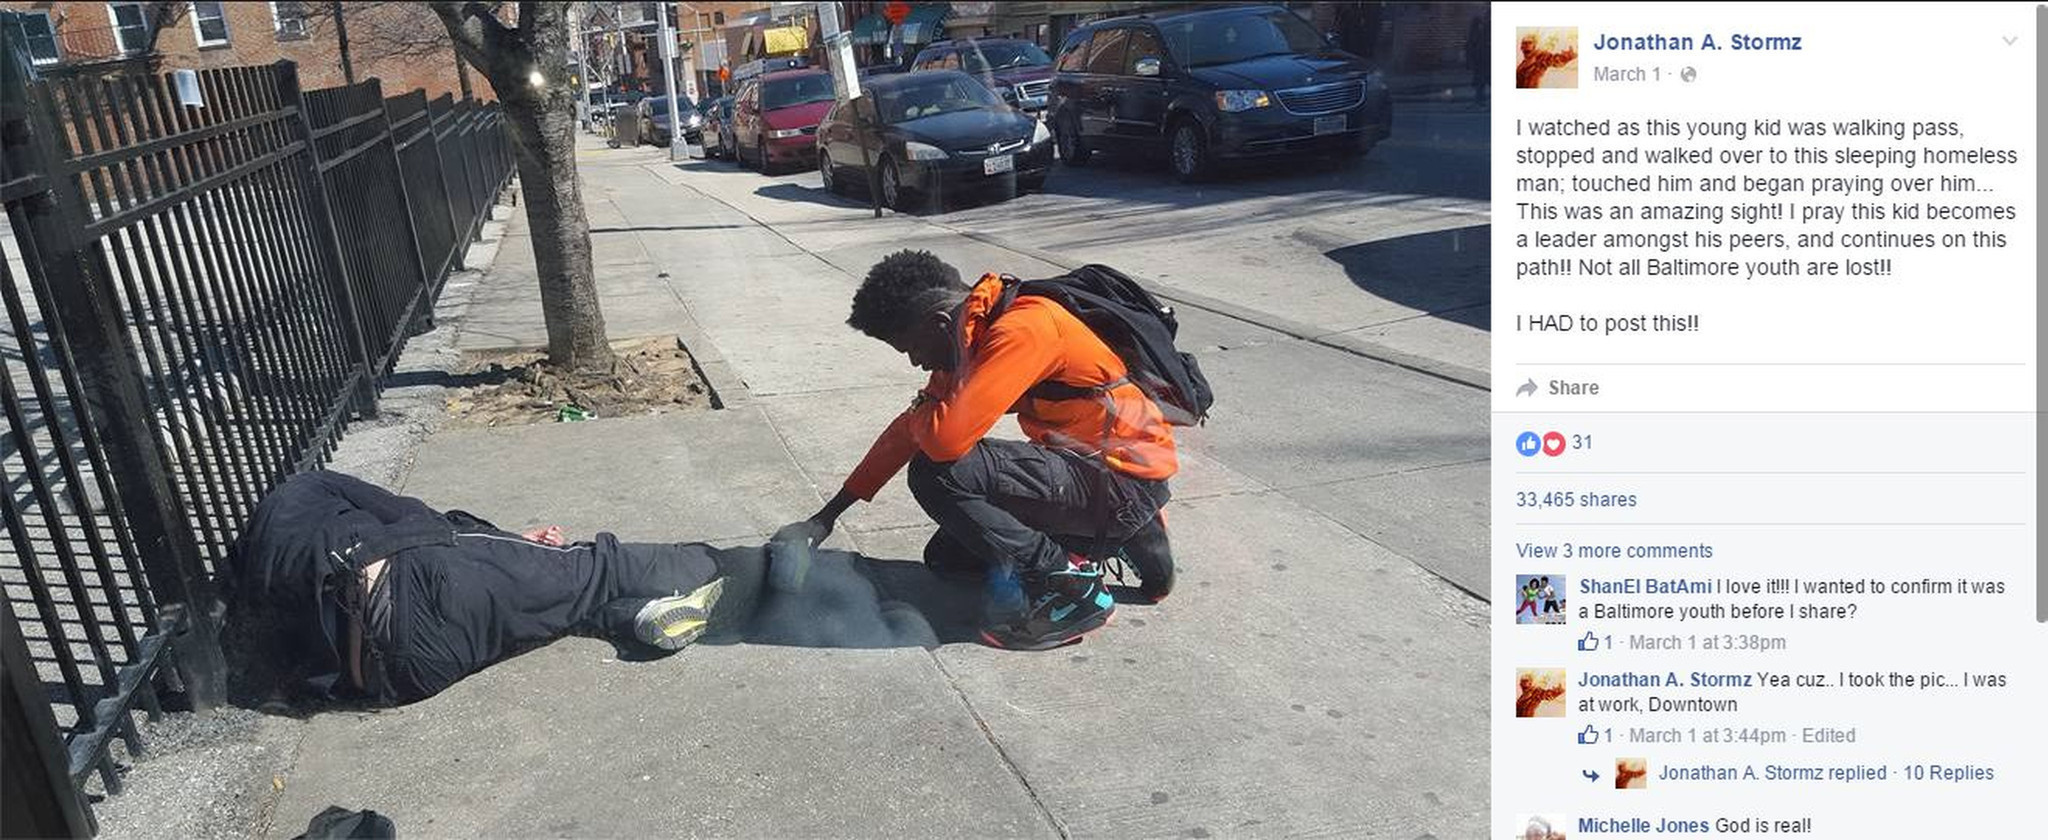 bal-teenage-boy-praying-over-homeless-man-in-baltimore-goes-viral-20160308